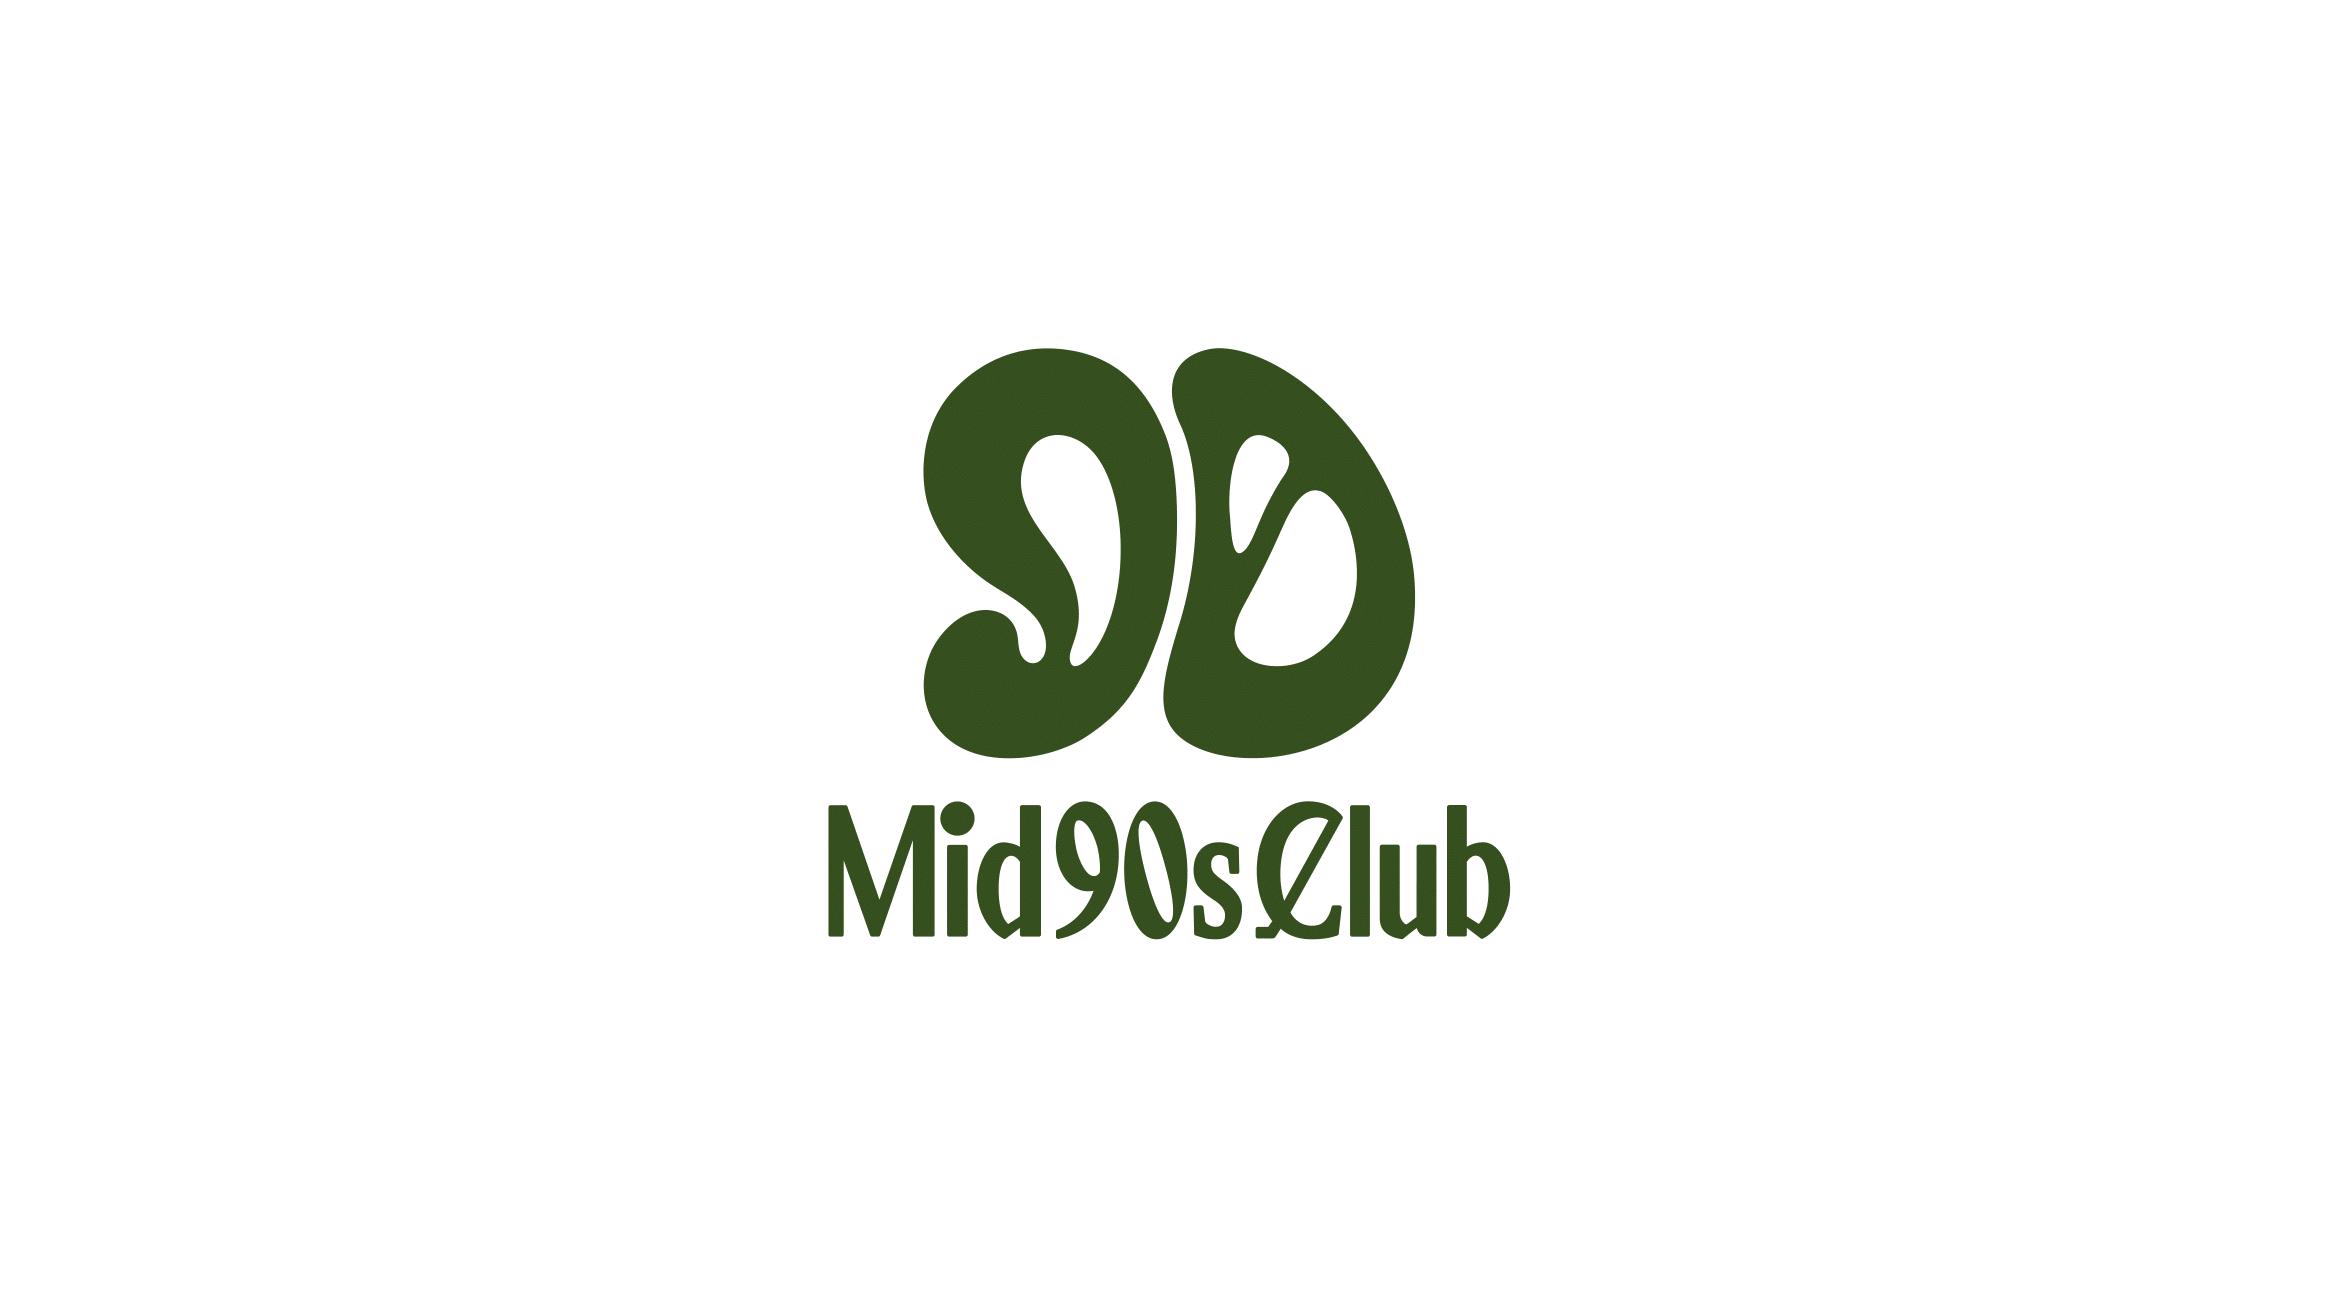 特売商品Mid 90s Club×Cph/Golf ADJUSTABLE PANTS パンツ